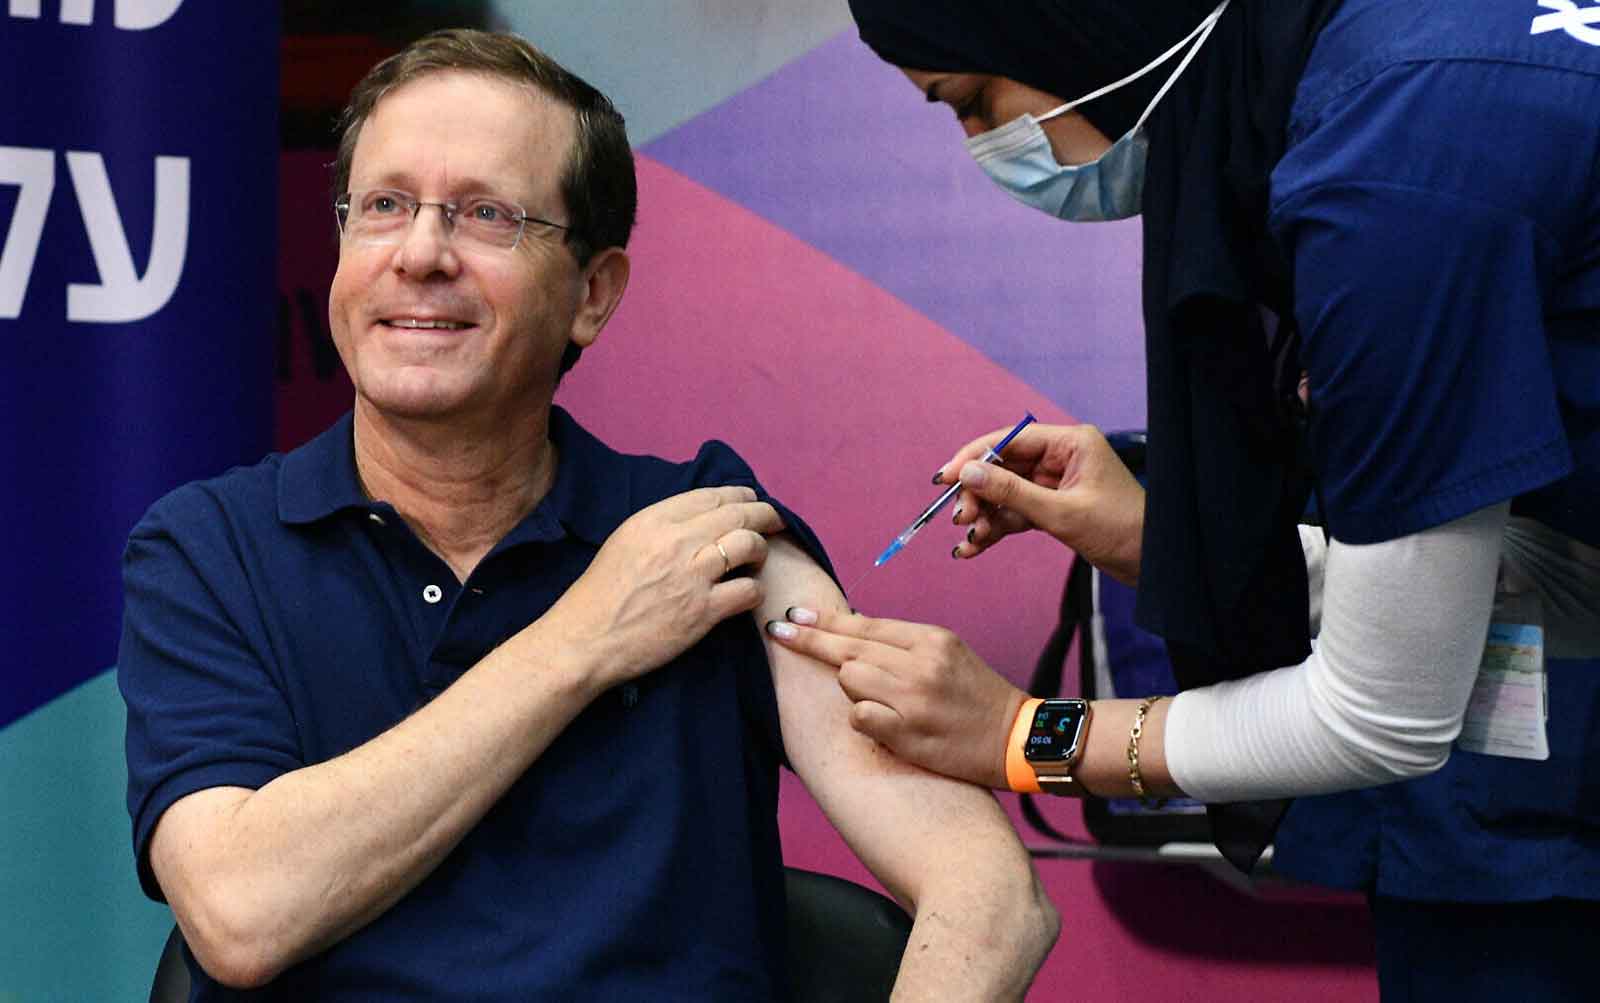 Covid-19 en Israel: Ancianos comienzan a recibir la tercera dosis de la vacuna